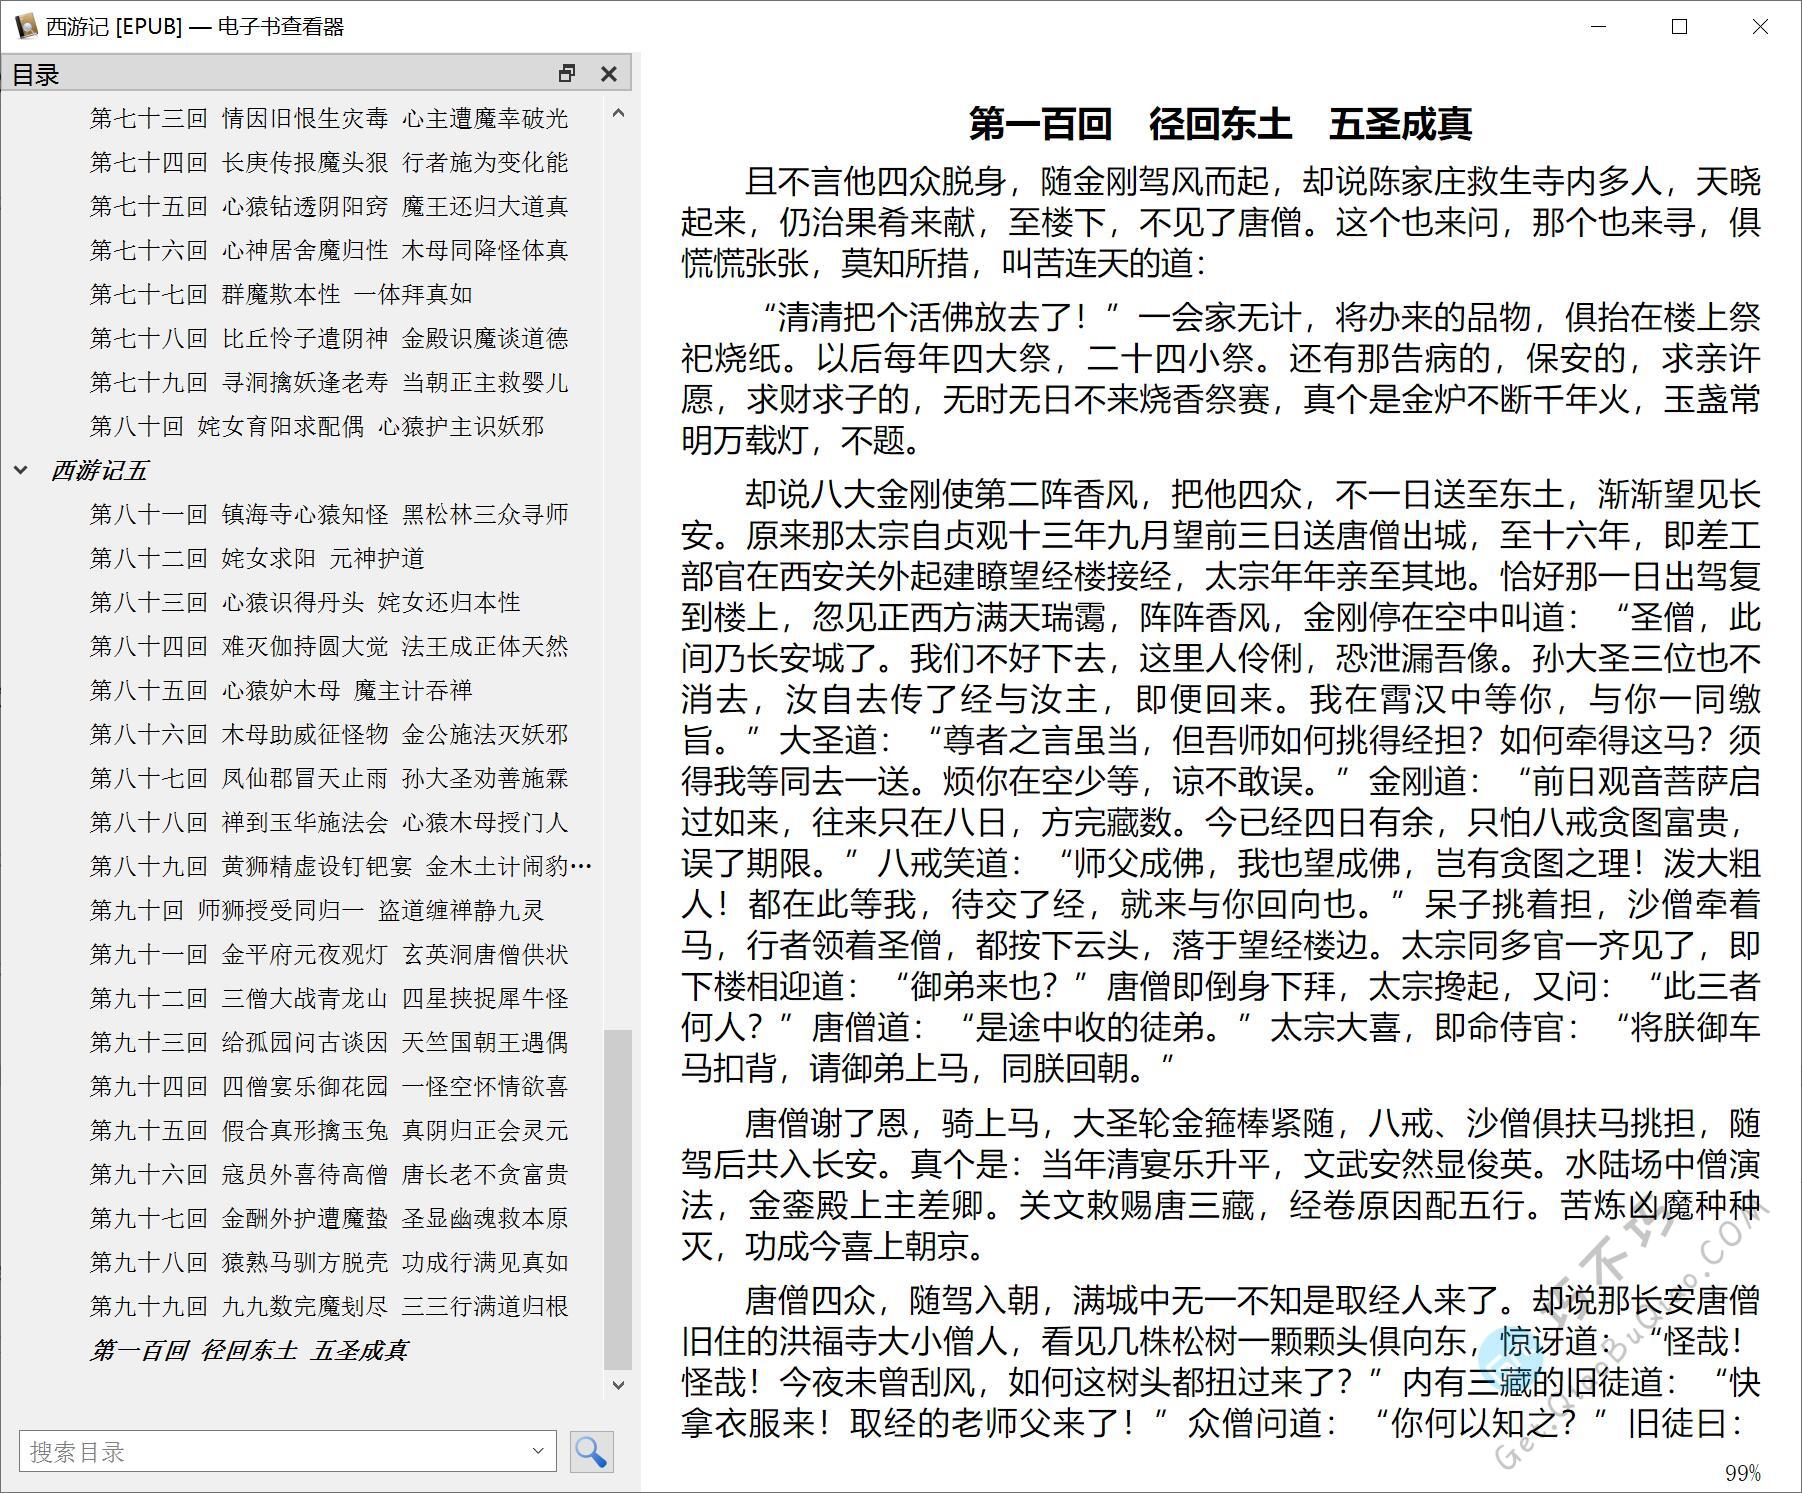 四大名著之吴承恩《西游记》书籍原著纯文字EPUB+PDF精排带目录阅读版本下载